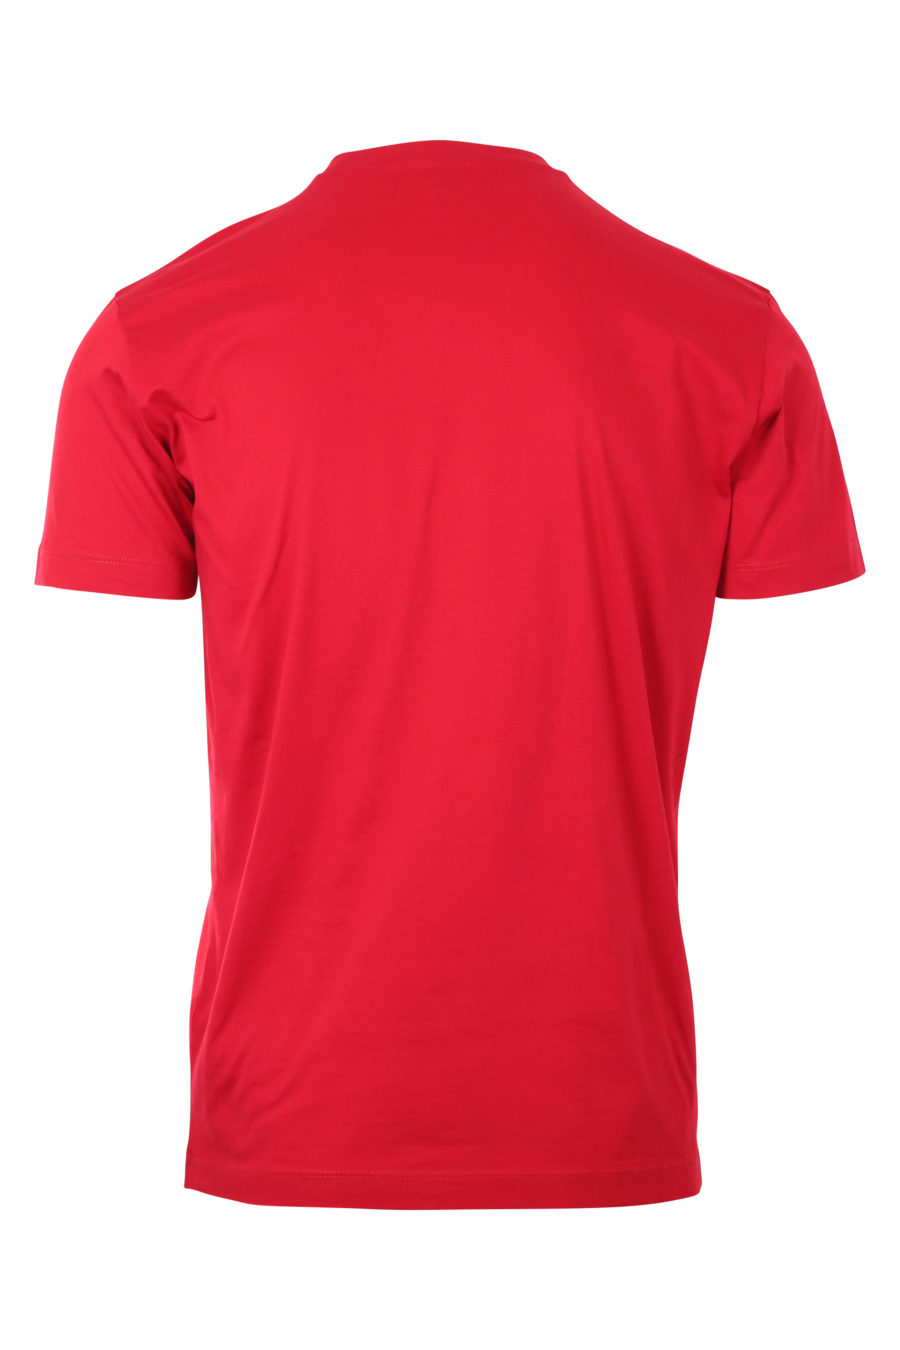 Camiseta roja oscura con logo "icon" - IMG 9746